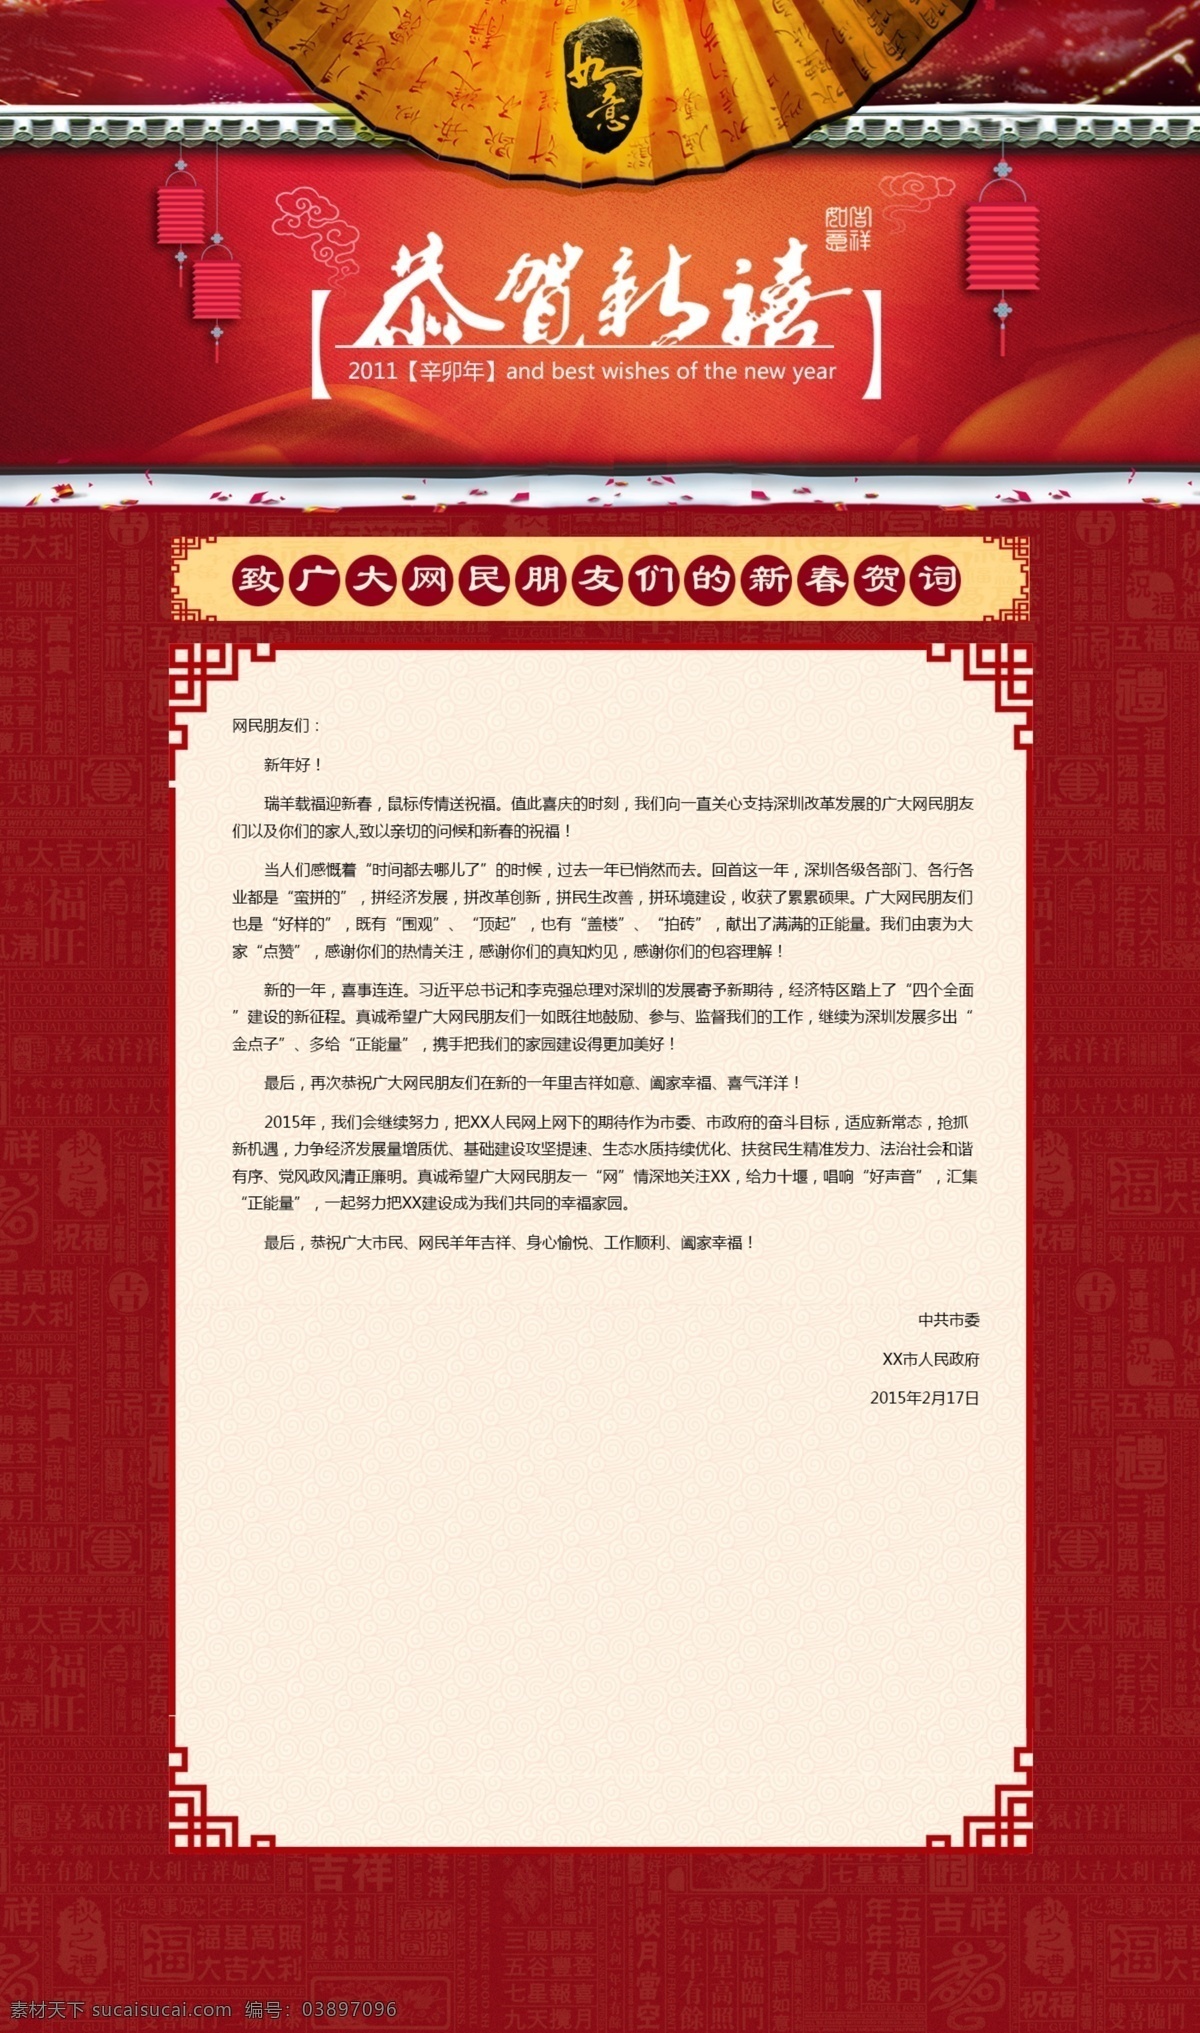 新春贺词 共和新年 新春 贺词 致信 如意 web 界面设计 中文模板